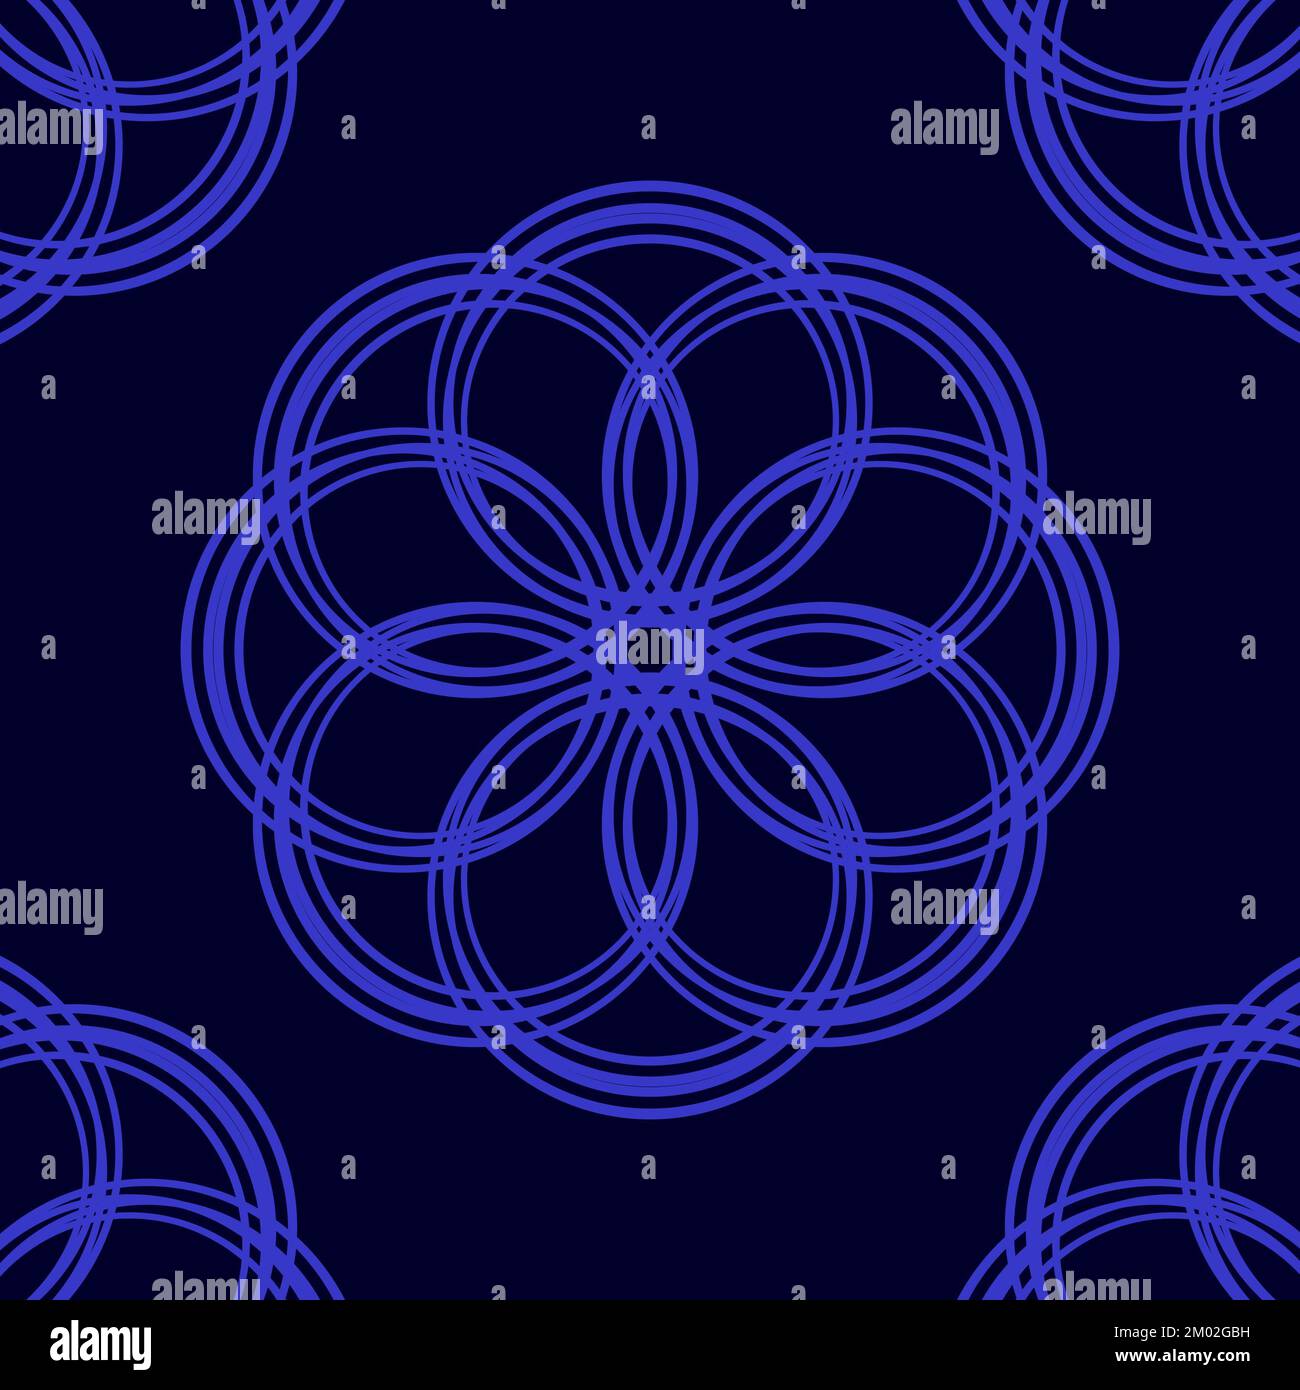 Illustration d'un motif de cercles bleus sur fond noir. Fleur stylisée. Illustration Mandala. Banque D'Images